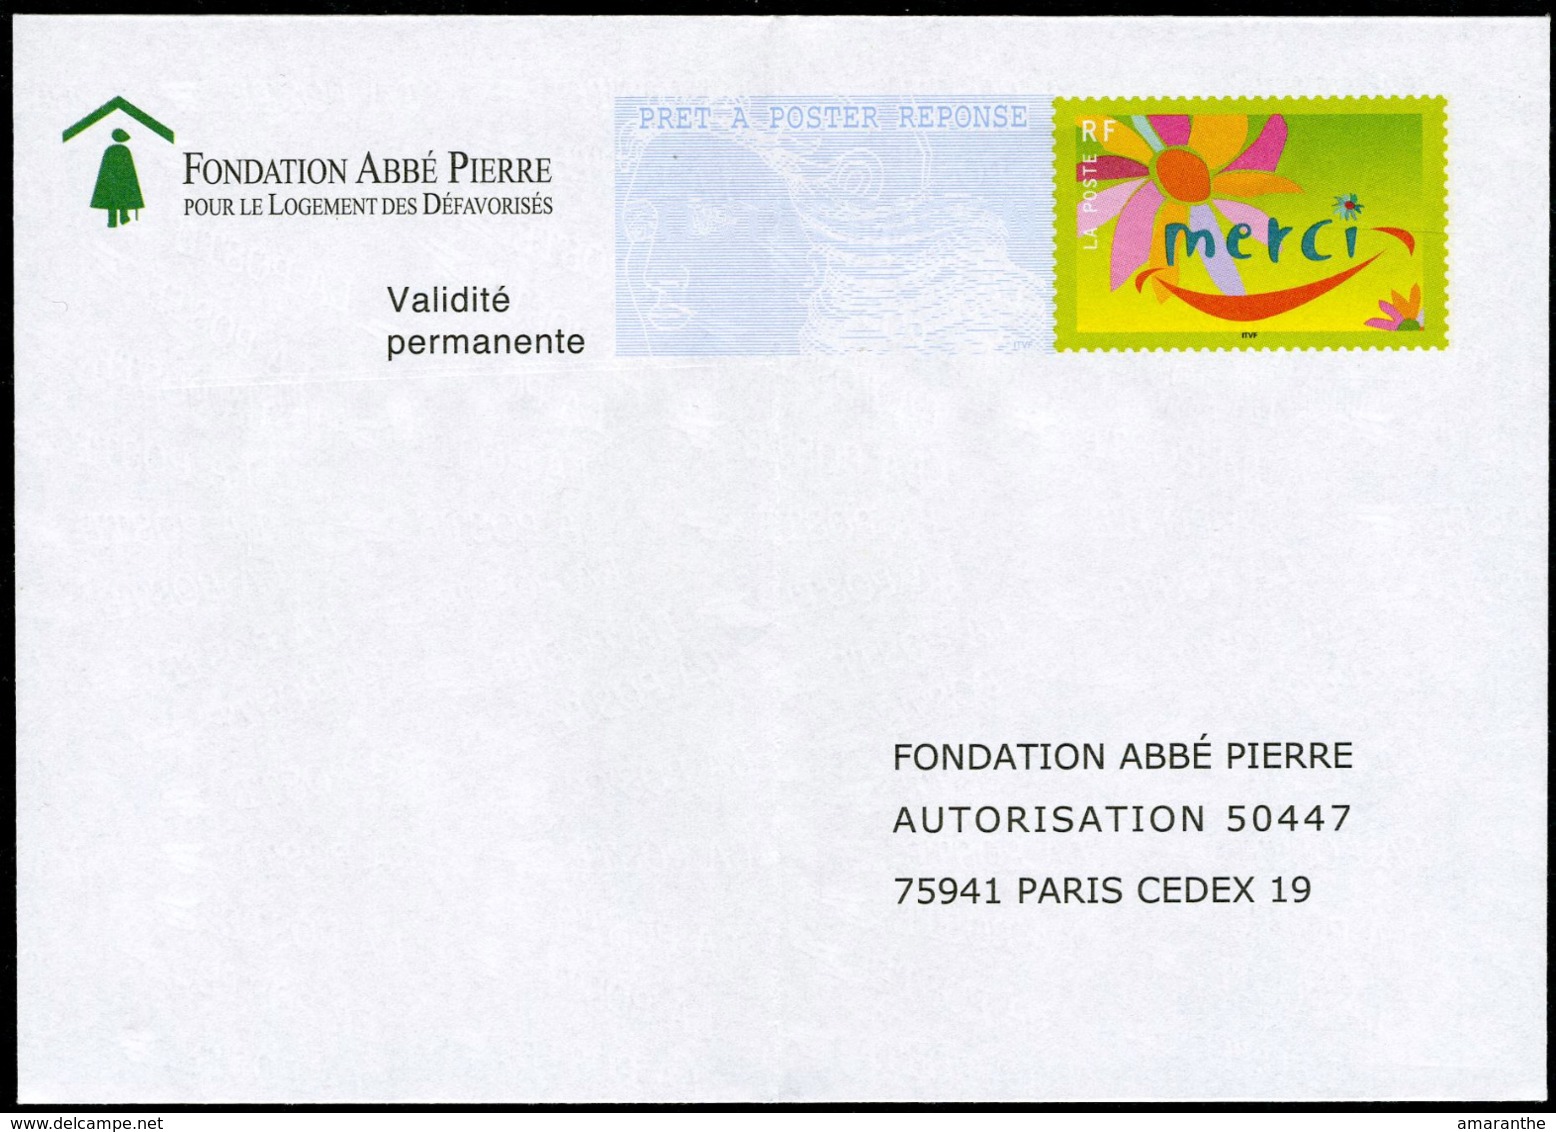 "Fondation Abbé Pierre" - Prêts-à-poster:reply